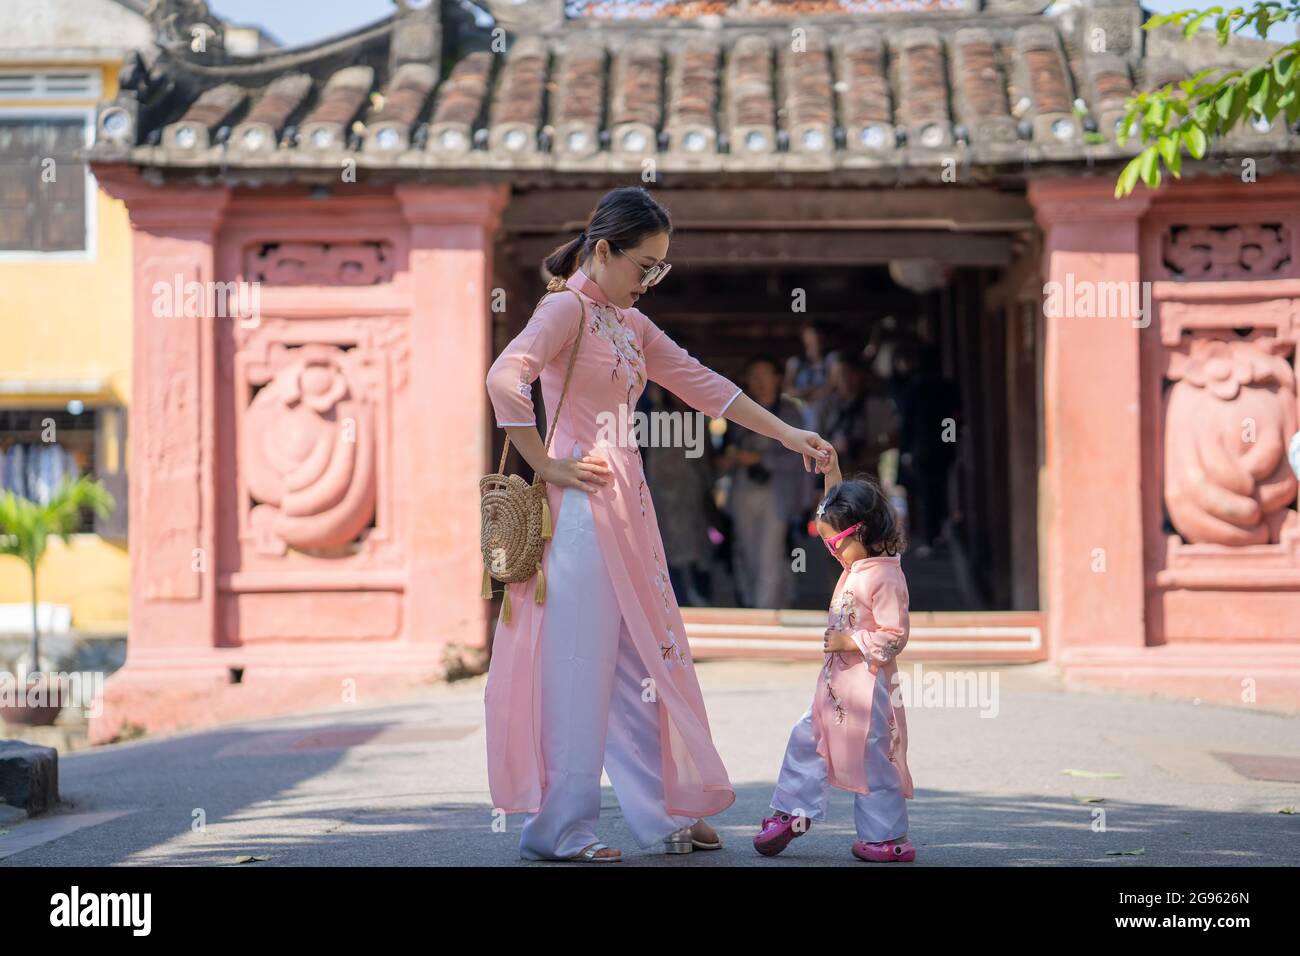 Jeune maman asiatique vêtue de vêtements similaires avec sa fille passant du temps avec elle pendant des vacances Banque D'Images